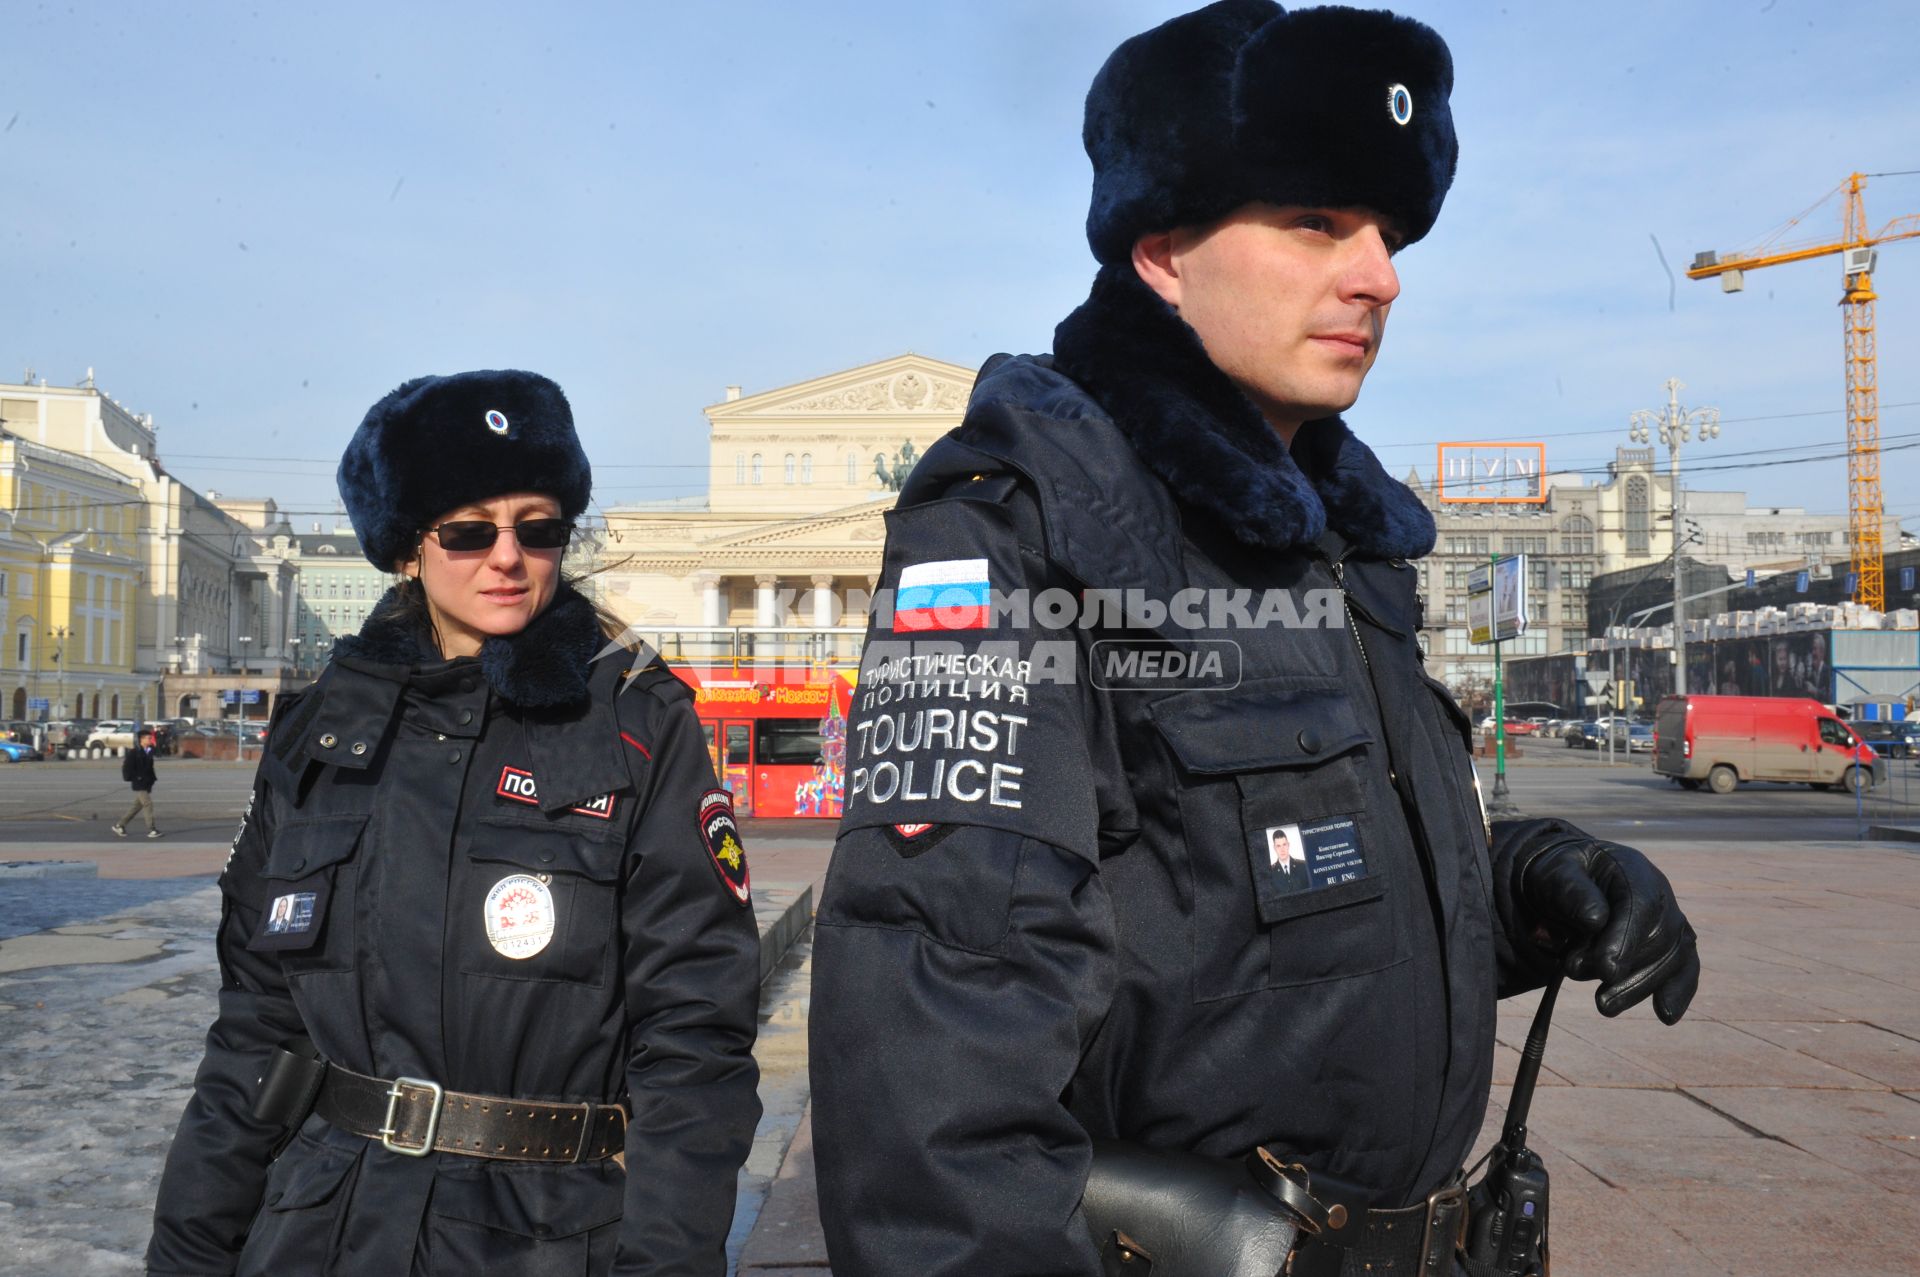 Москва. Сотрудники туристической полиции патрулируют Театральный проезд для оказания помощи иностранцам.